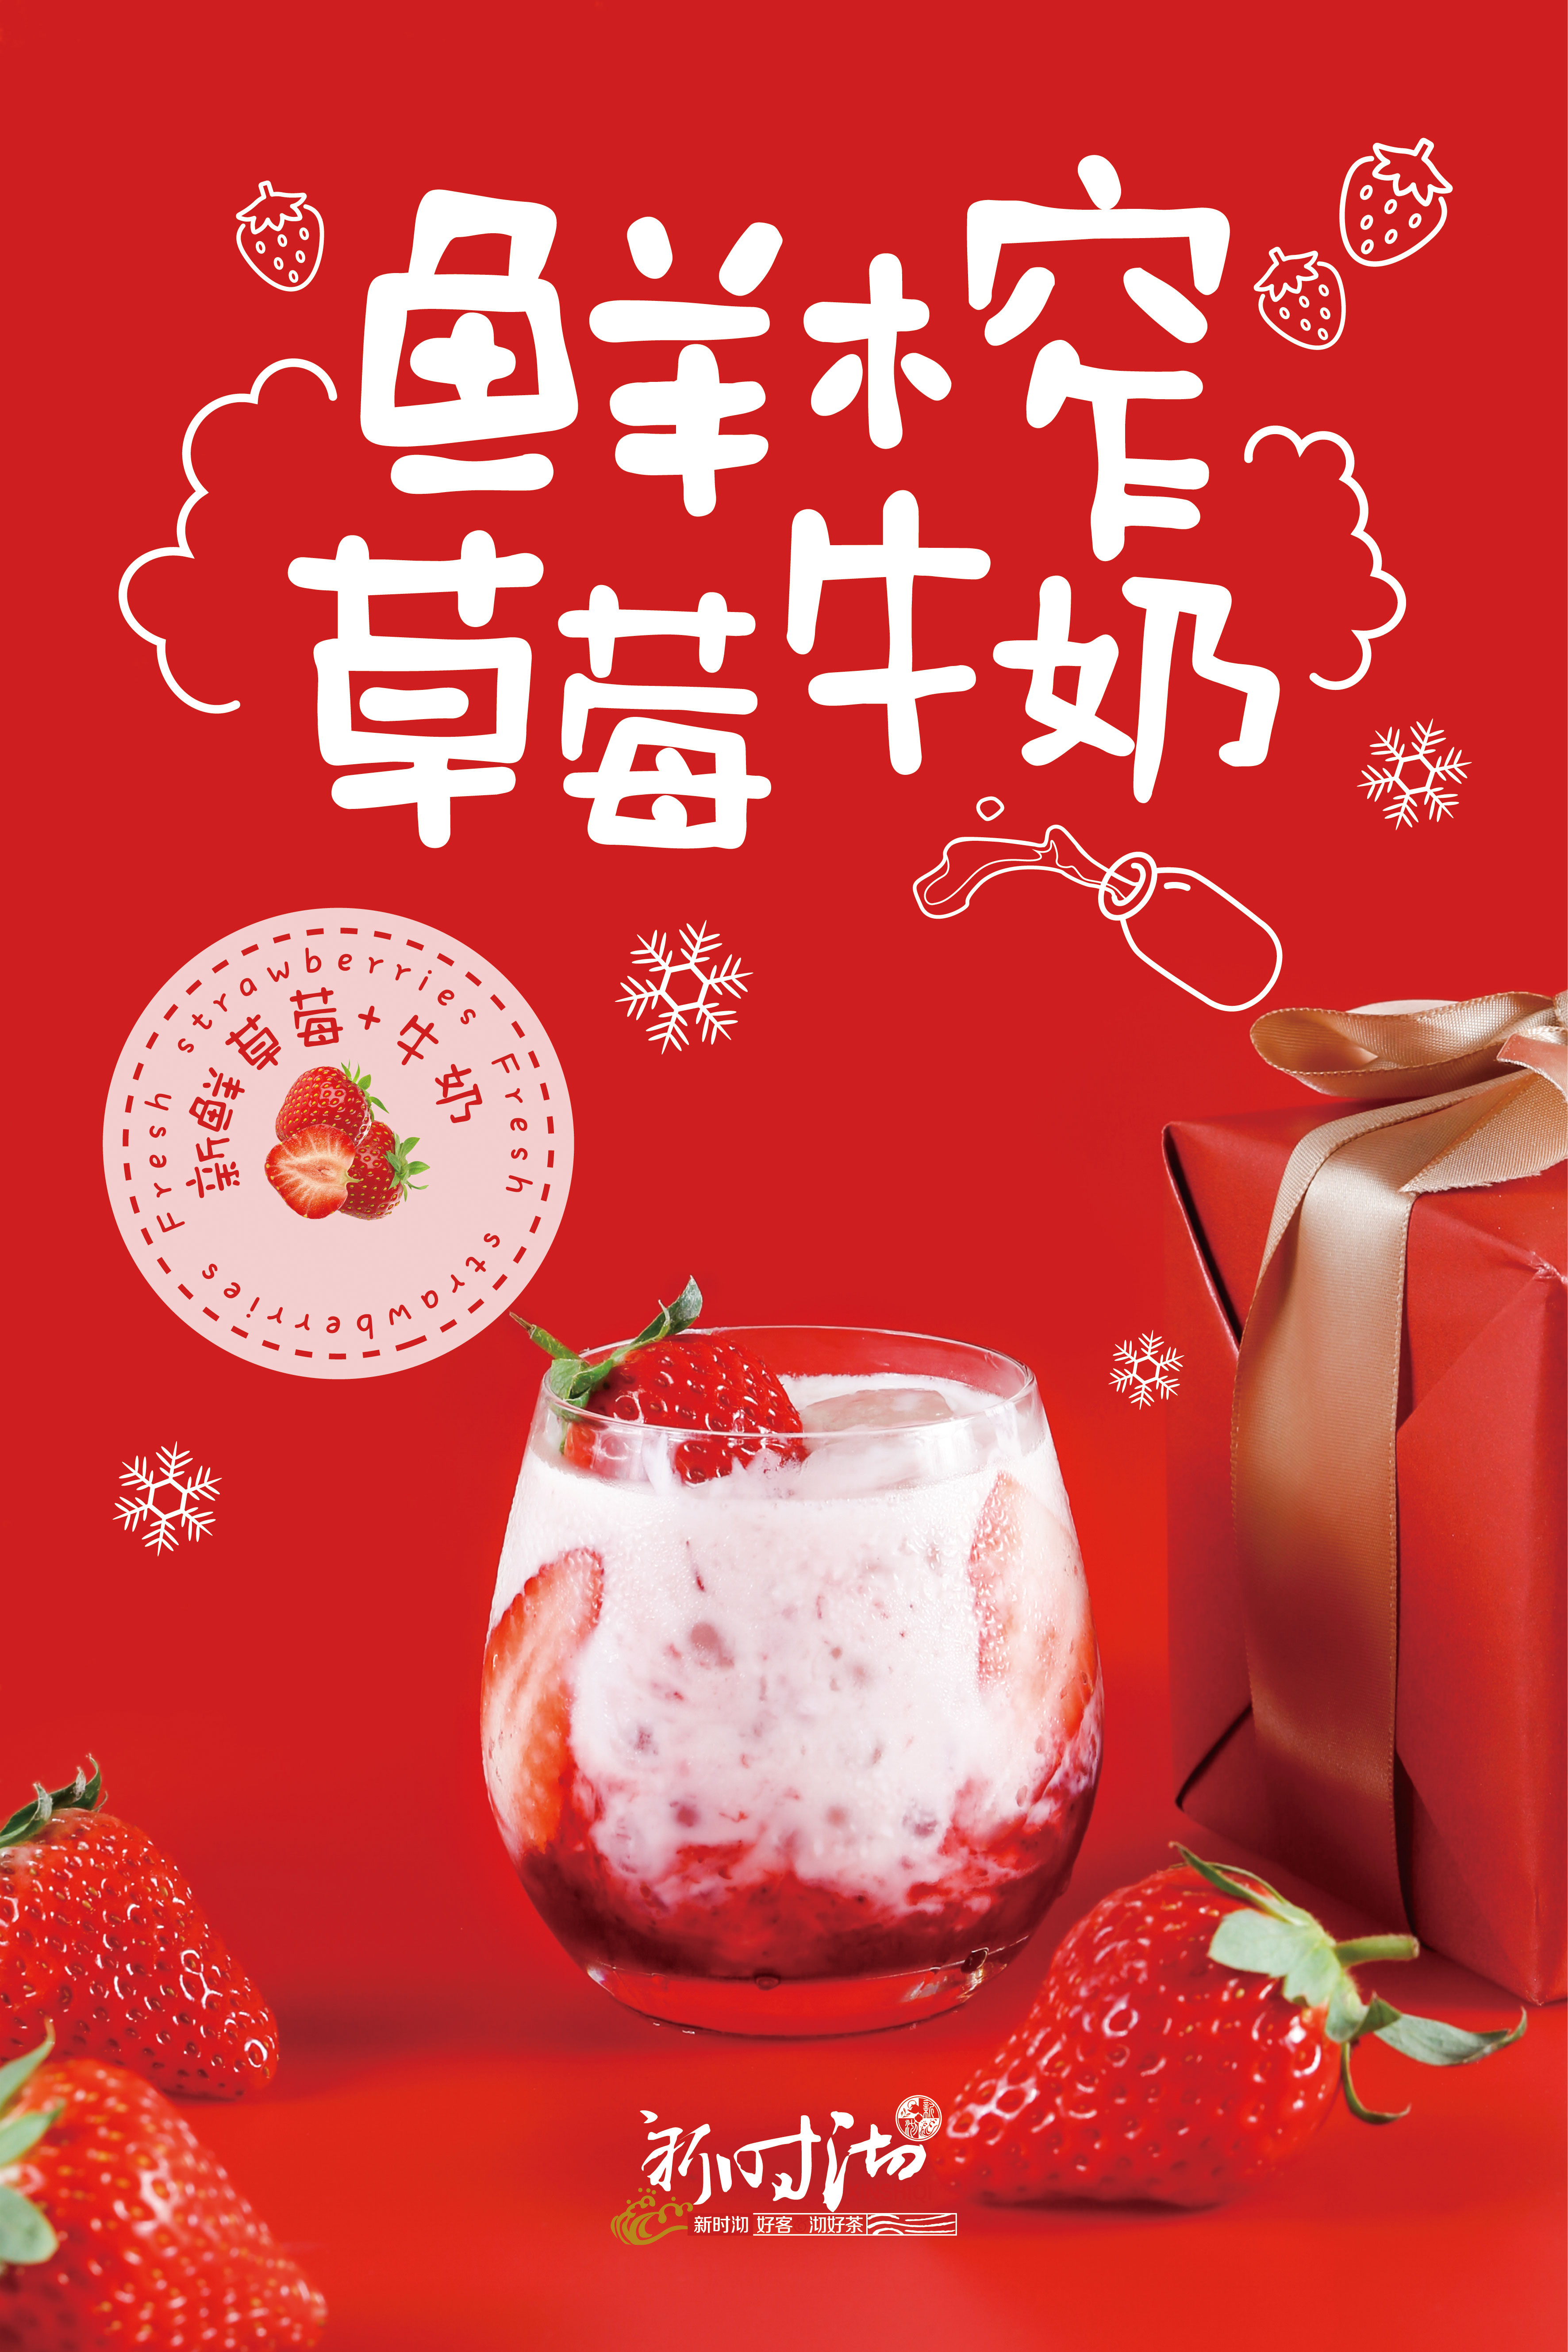 摄影食品草莓牛奶作品信息创作时间2018/12/2606: 美食海报单页设计